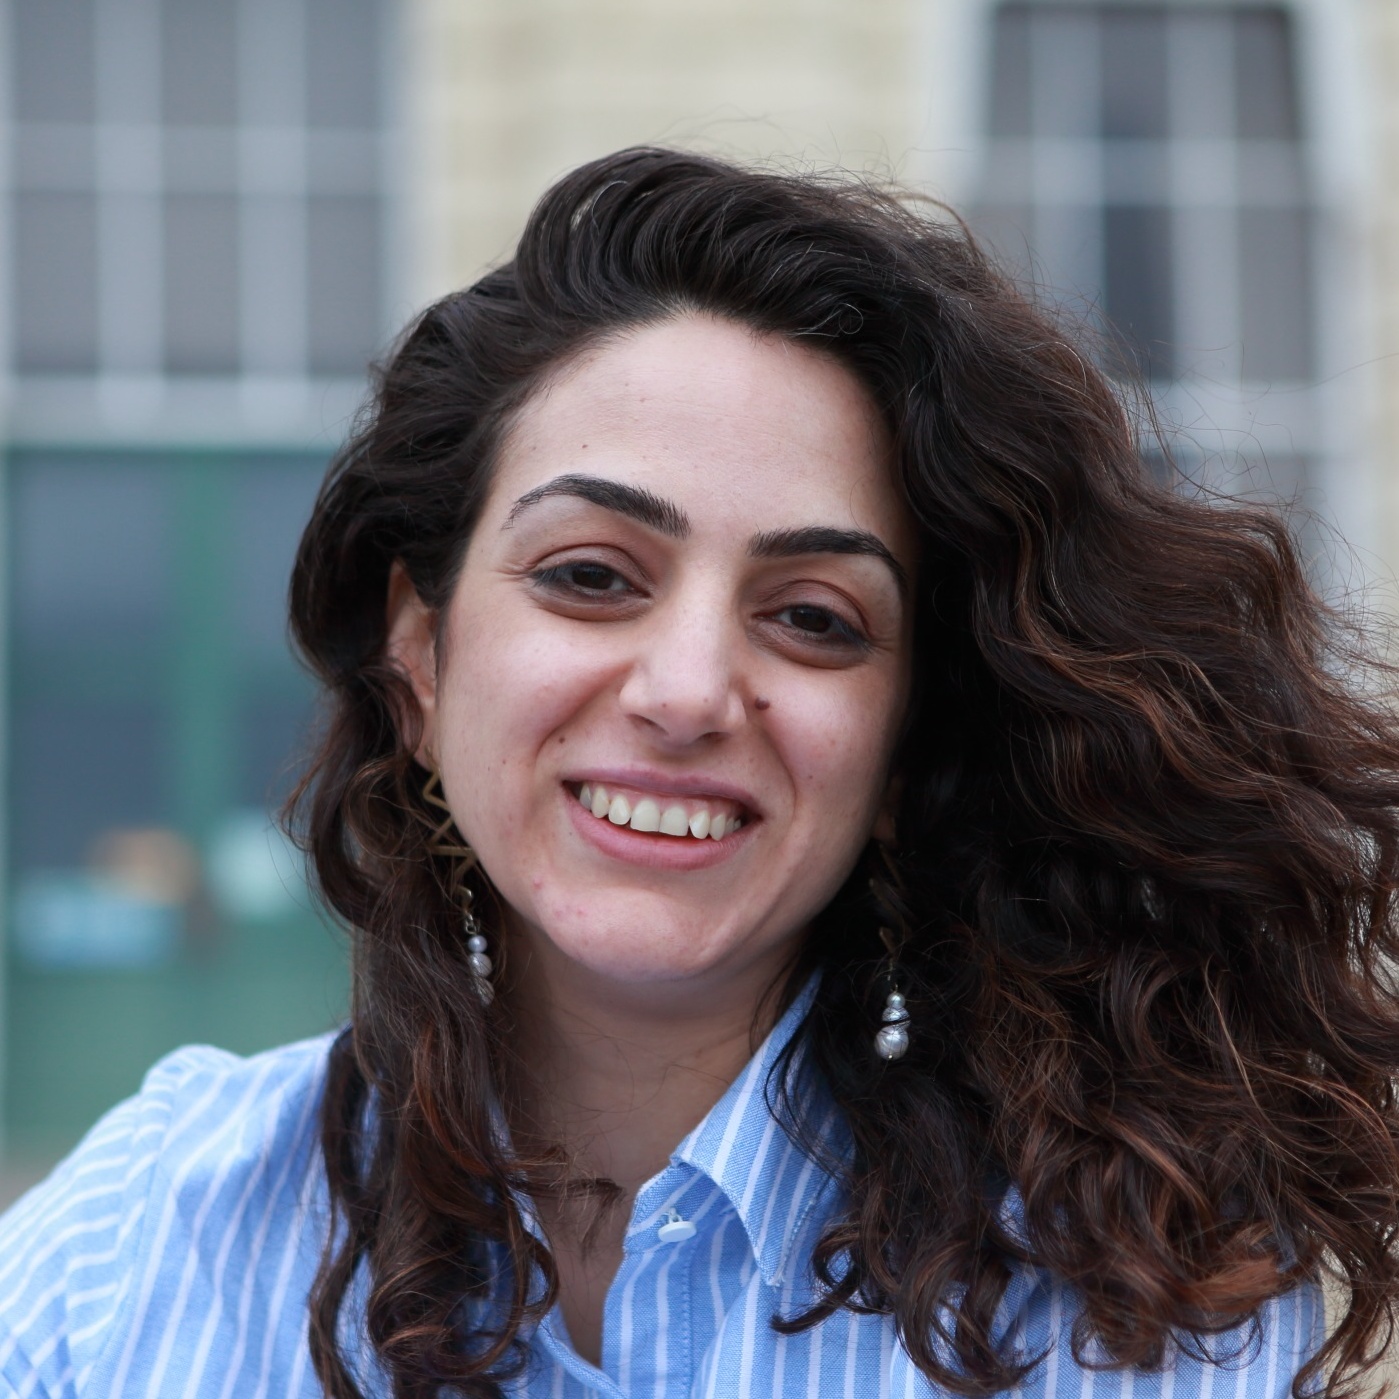 Dina Aboughazala